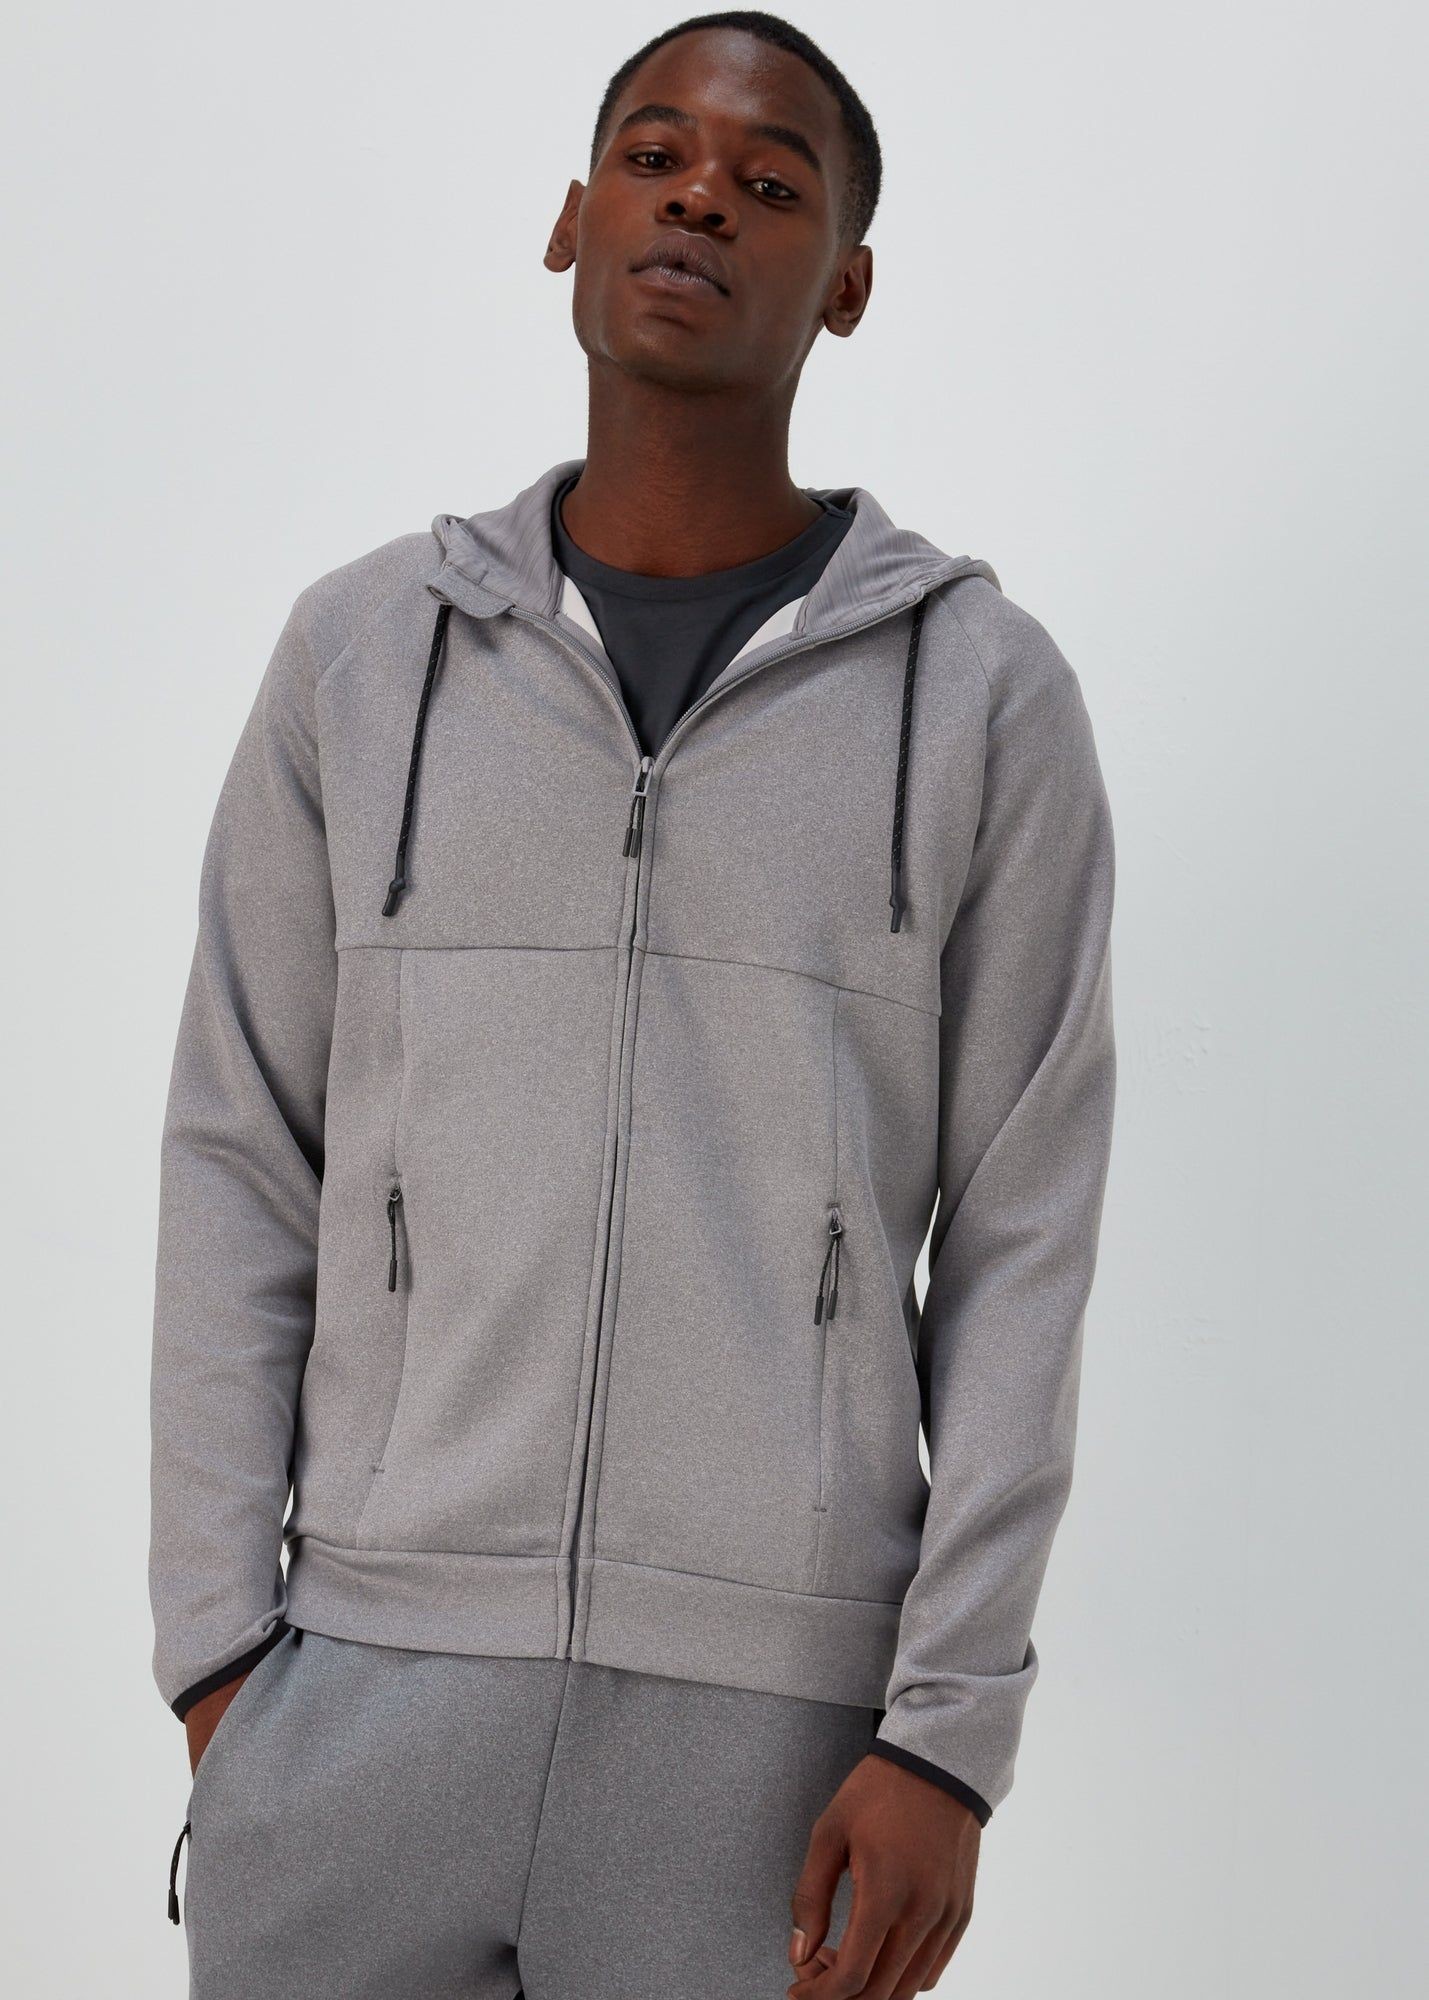 Men's Hoodies & Sweatshirts  Oversized & Zip Up - Matalan